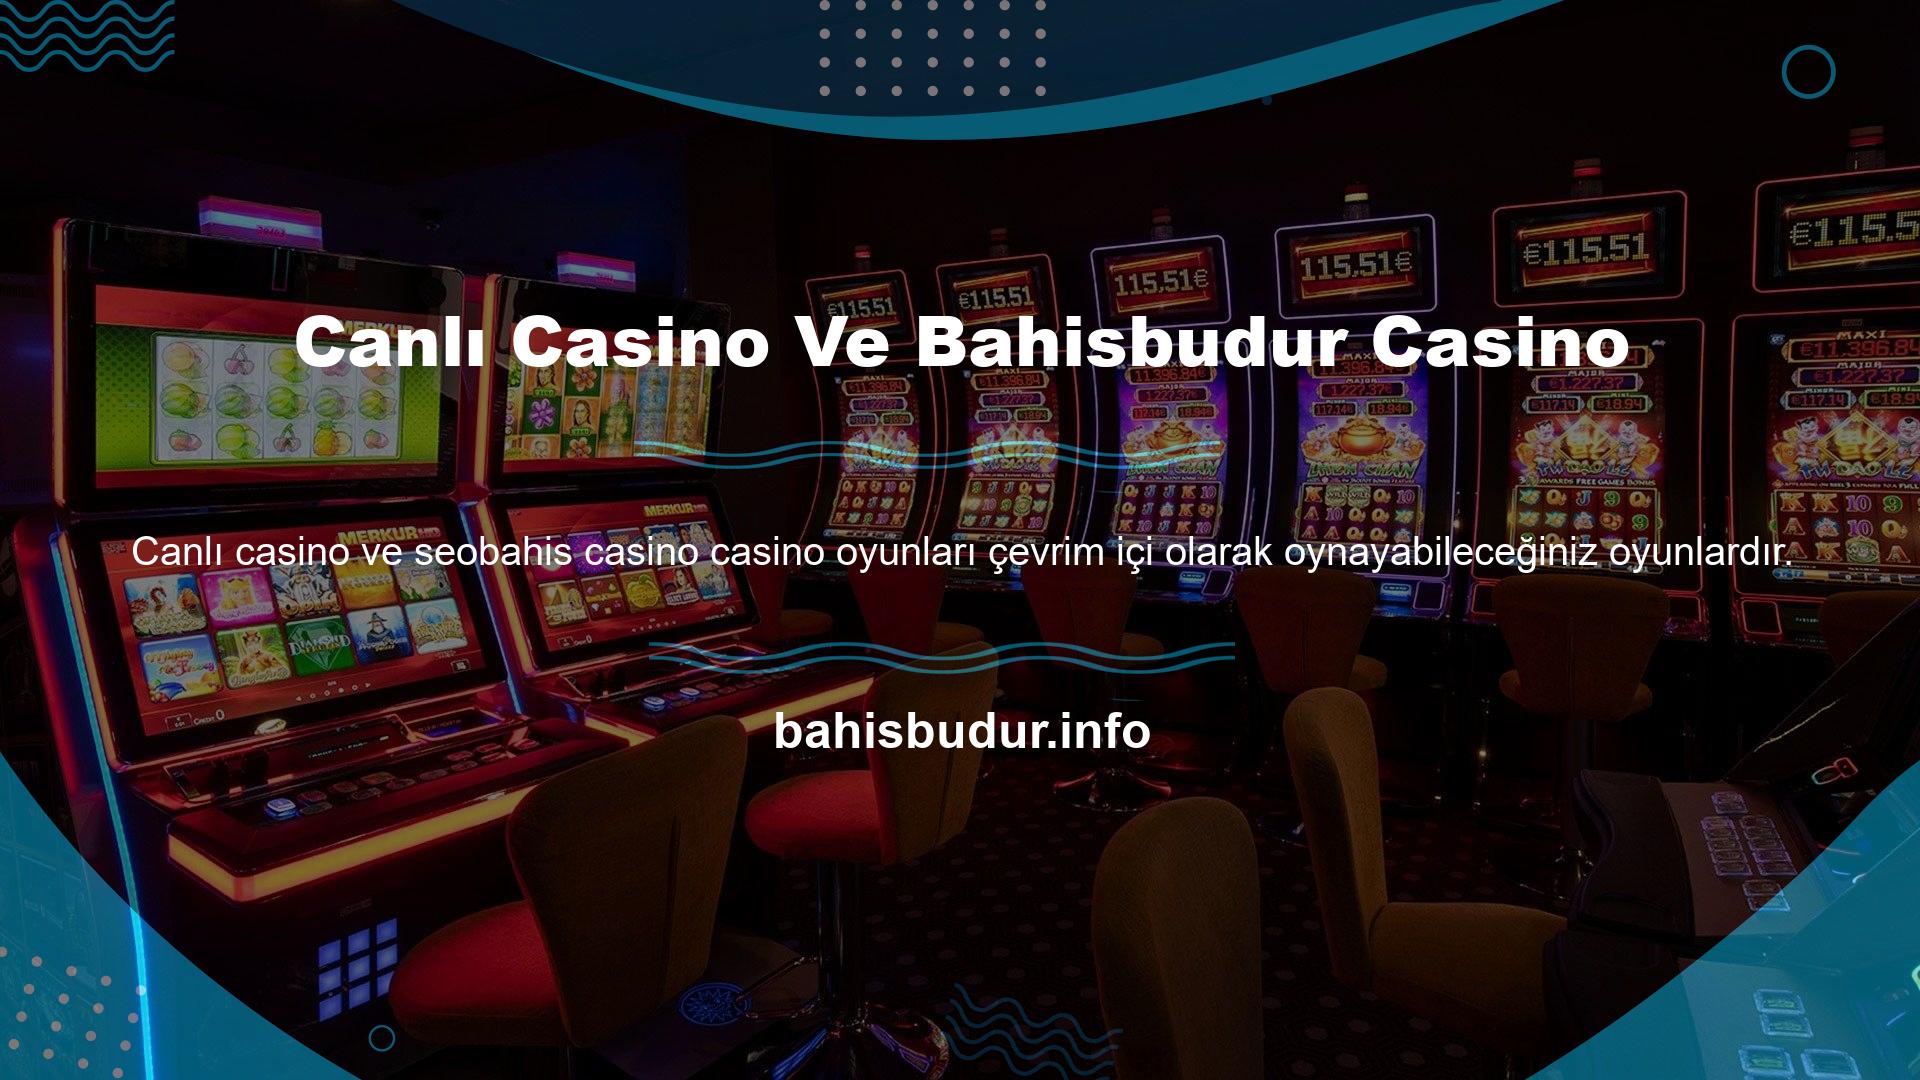 Casino sitelerine bağlanmak için herhangi bir çevrim içi bağlantı gerekmemektedir